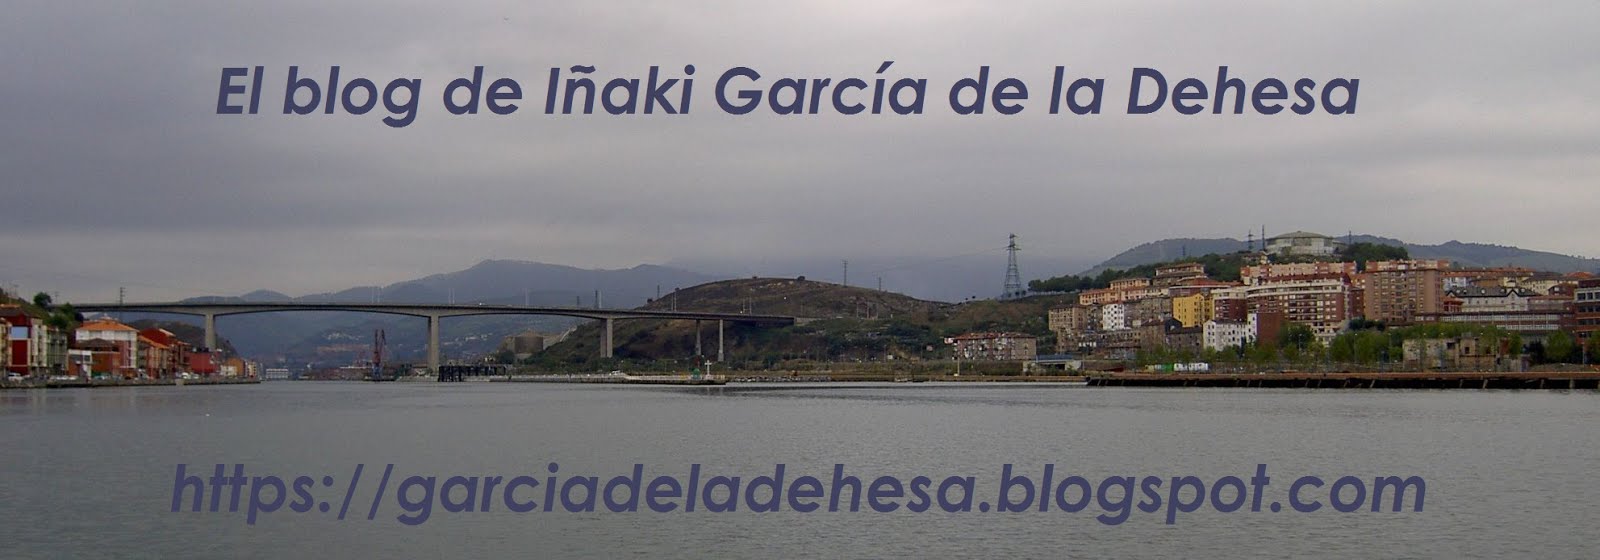 El blog de Iñaki García de la Dehesa